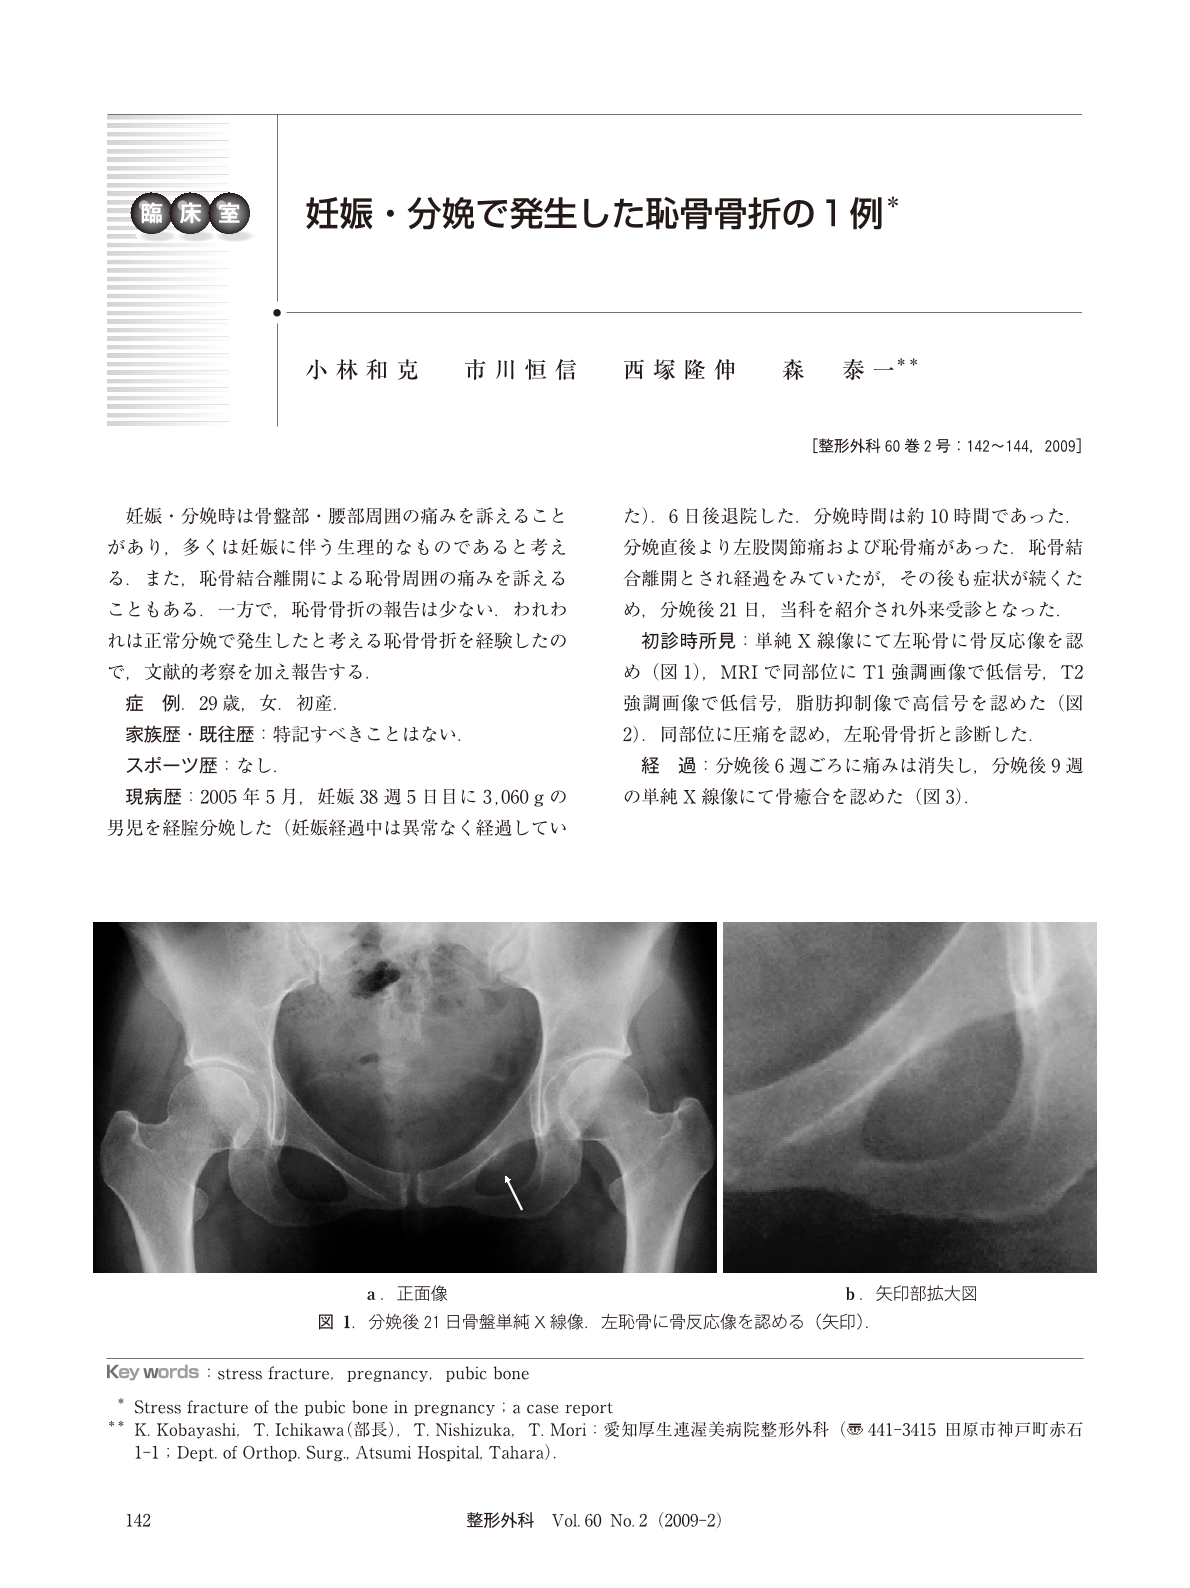 妊娠 分娩で発生した恥骨骨折の1例 臨床雑誌整形外科 60巻2号 医書 Jp